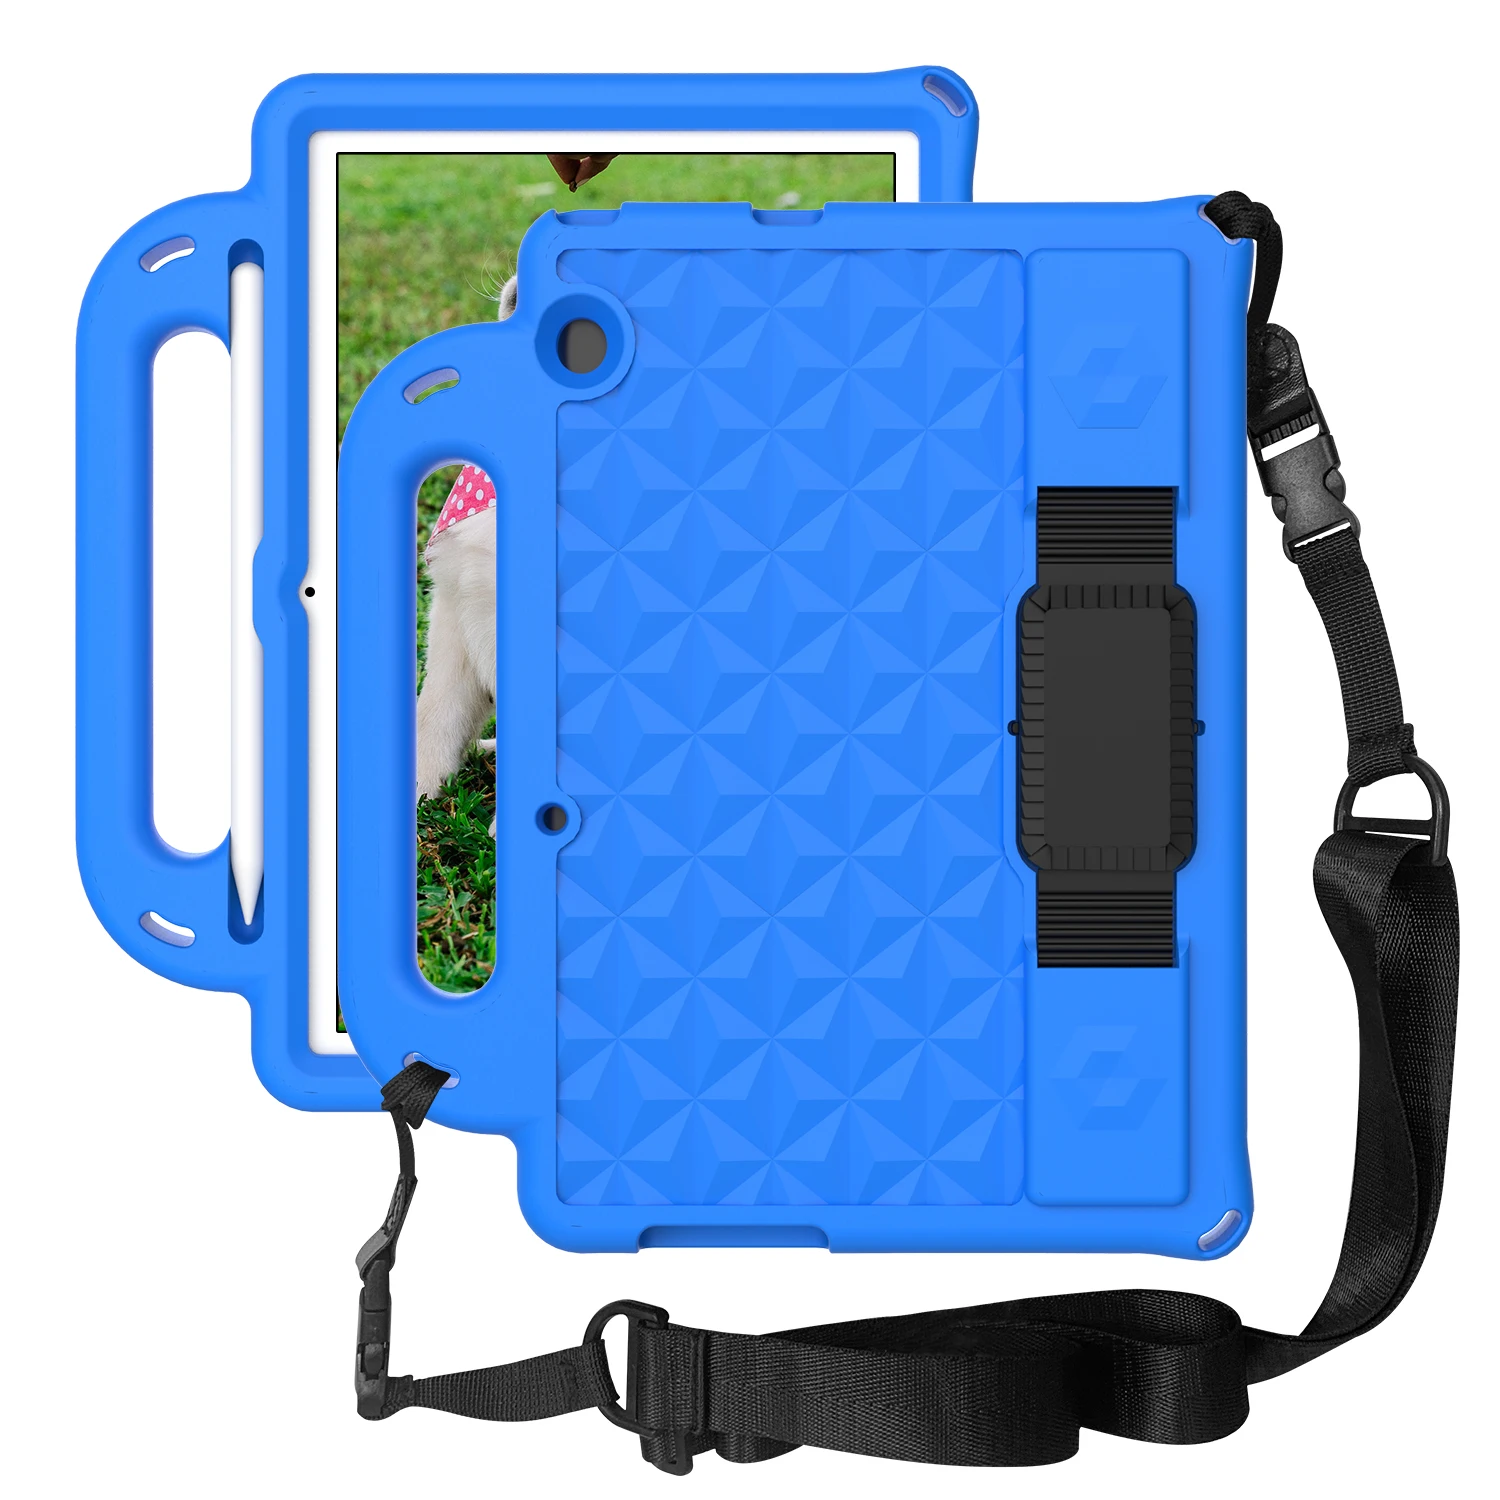 

Чехол для планшета T5 10, противоударный детский чехол-подставка из ЭВА с ремешком для Huawei MediaPad T5 10, 10,1 дюйма